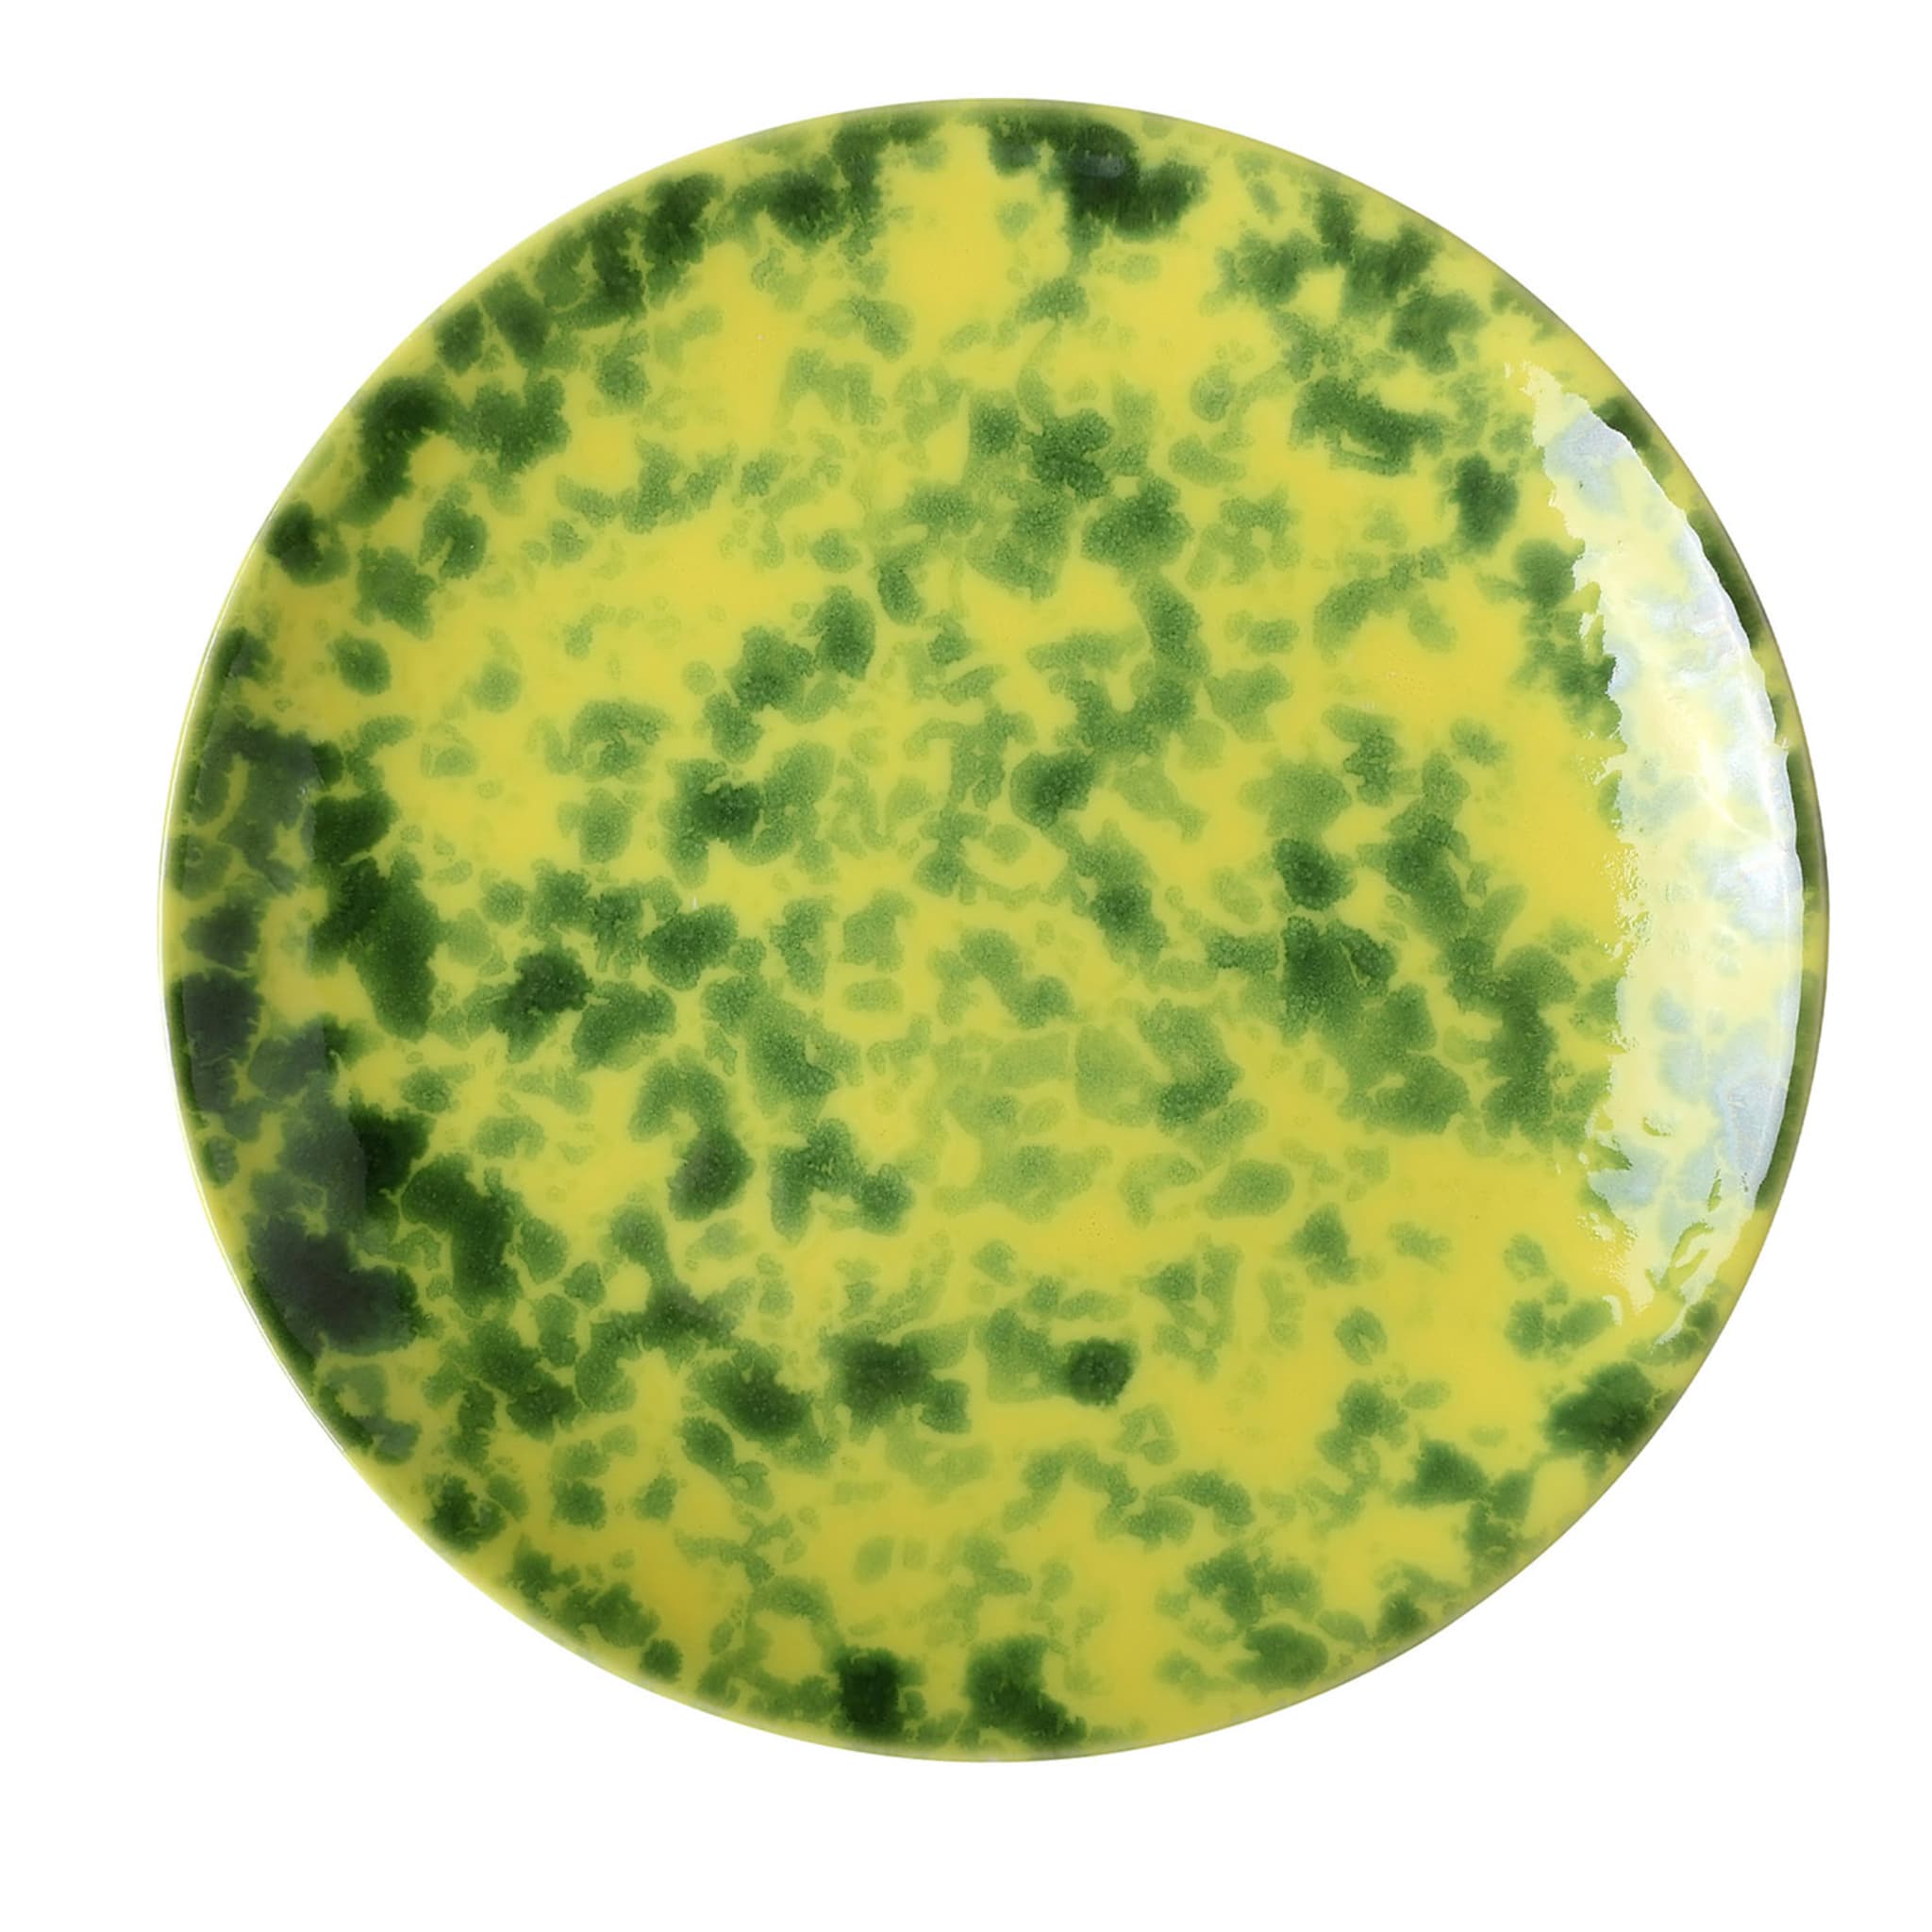 Limoni Runder grün-melierter gelber Suppenteller - Hauptansicht